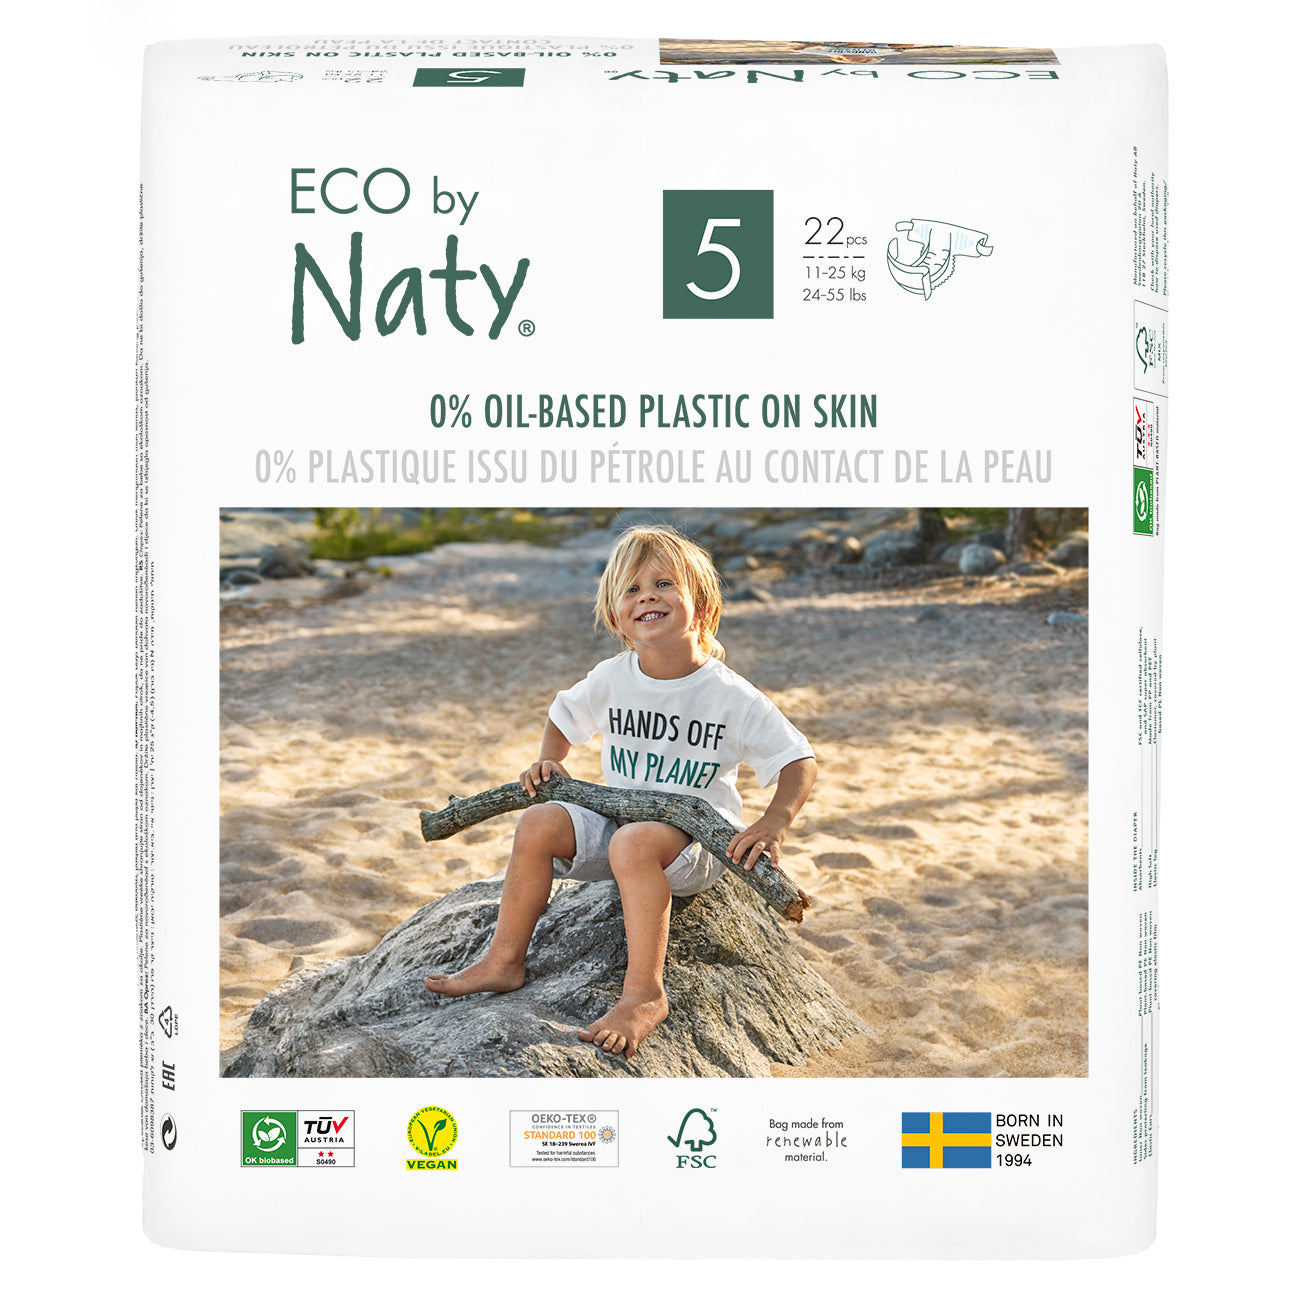 Eco by Naty eco nappies